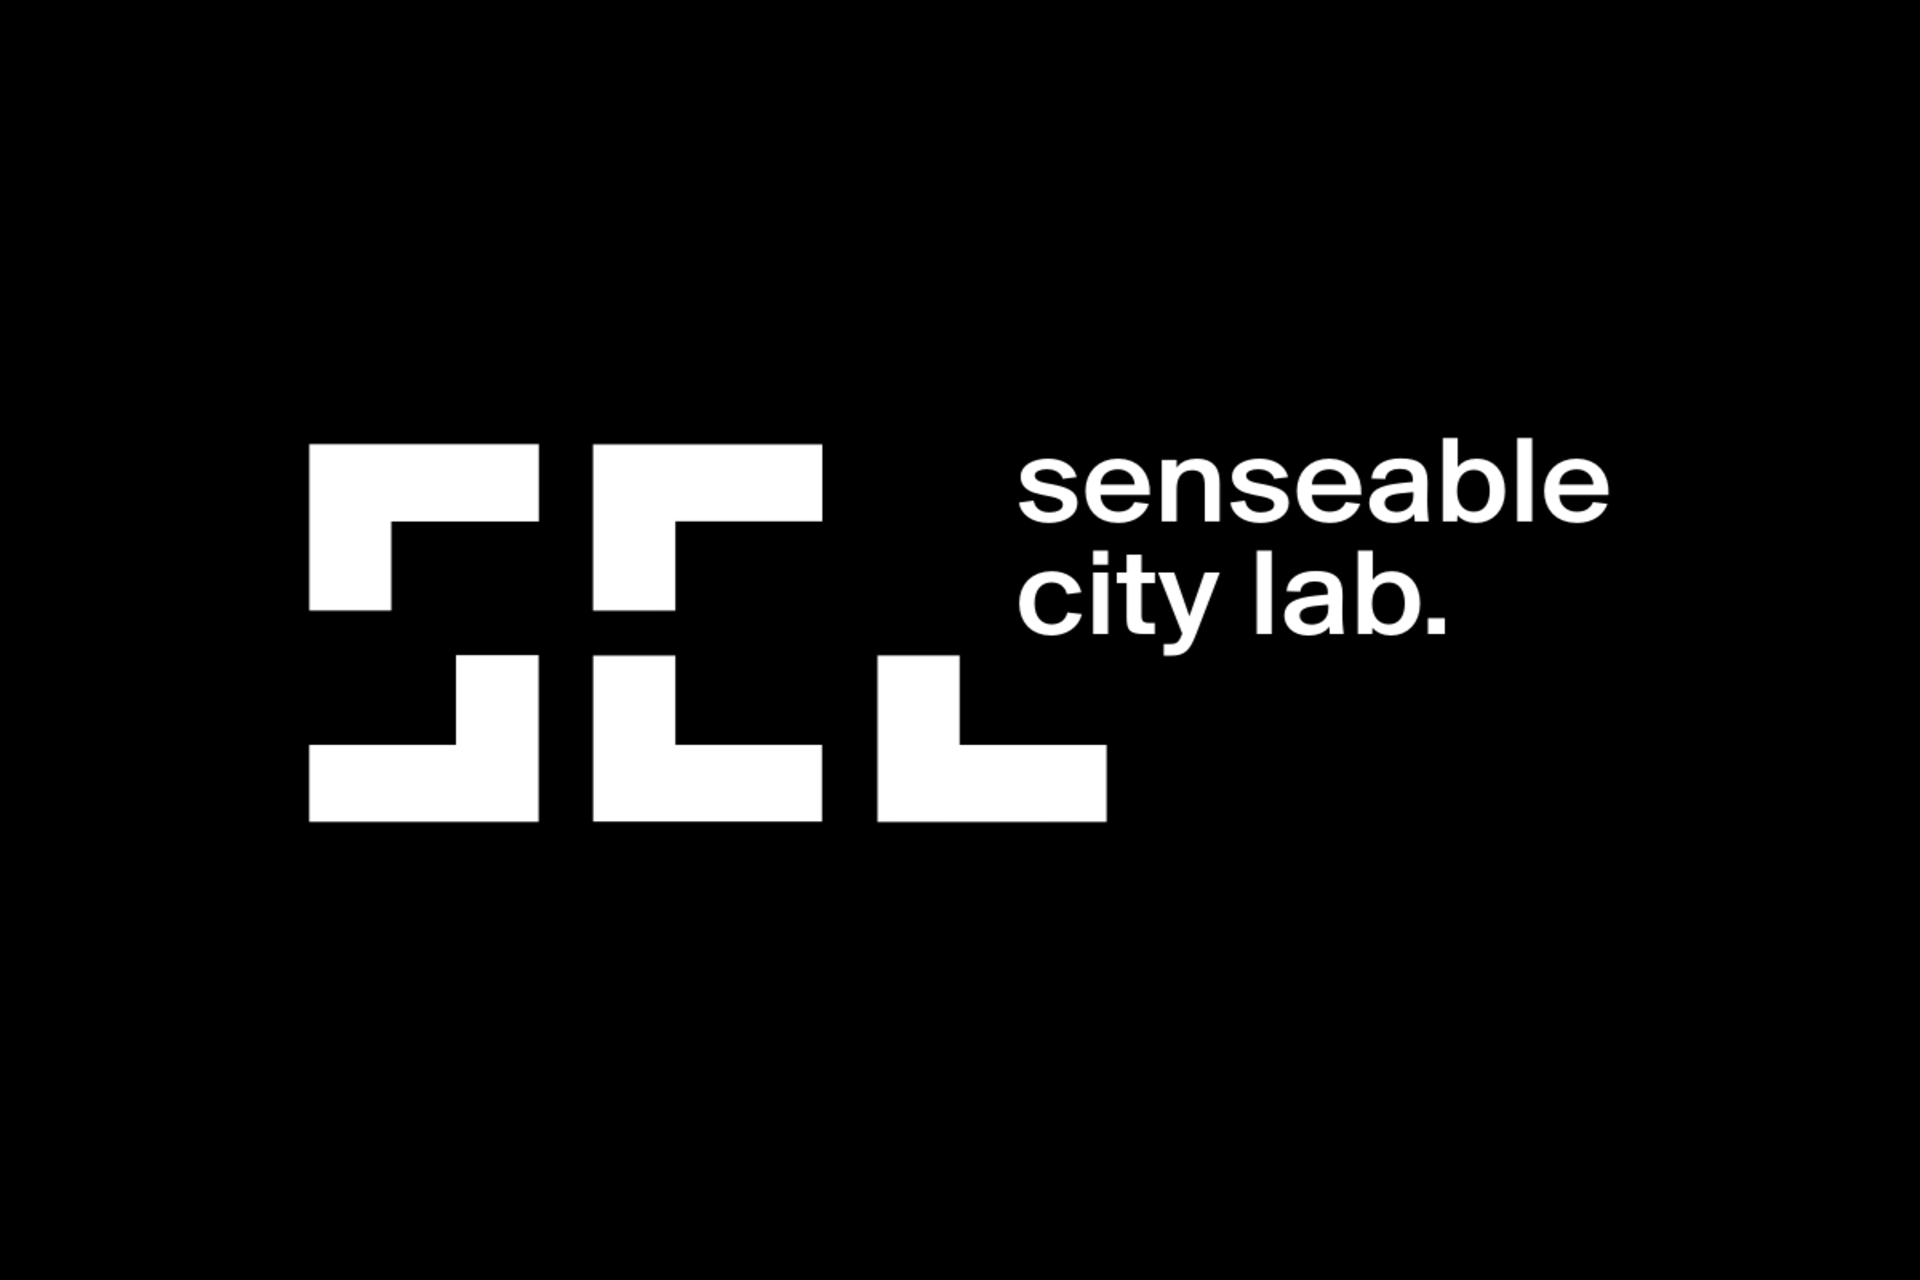 สถาบันเทคโนโลยีแมสซาชูเซตส์: MIT Senseable City Lab จะมาถึง Bologna Tecnopolo เพื่อจินตนาการถึงเมืองแห่งอนาคตด้วยความร่วมมือกับภูมิภาค Emilia-Romagna